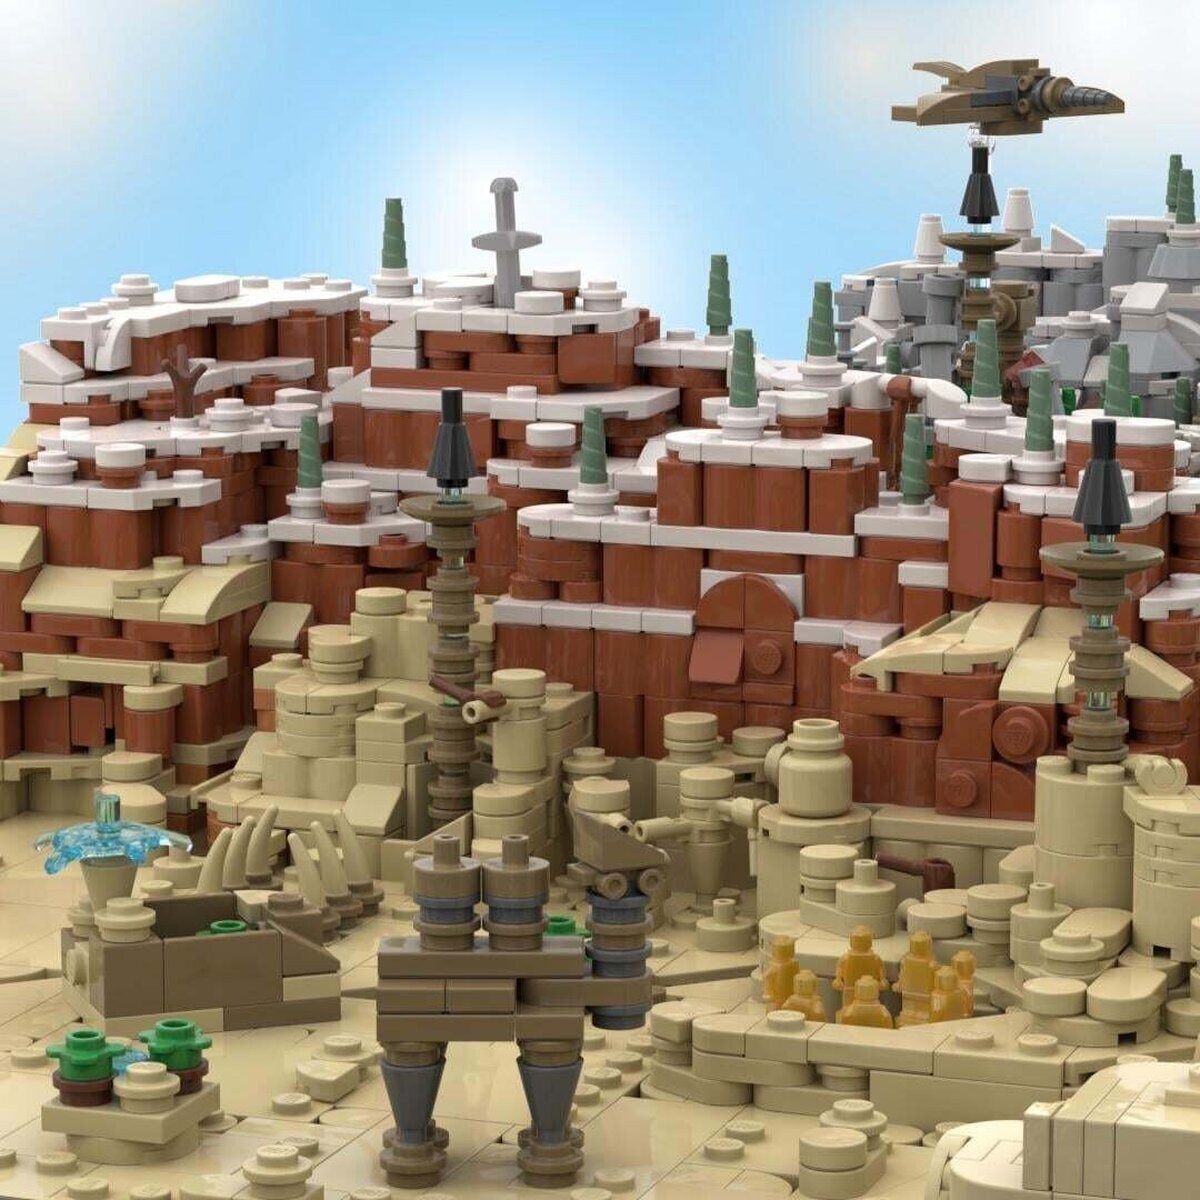 Han recreado el mapa de Zelda Breath of the Wild con más de 14000 piezas de LEGO